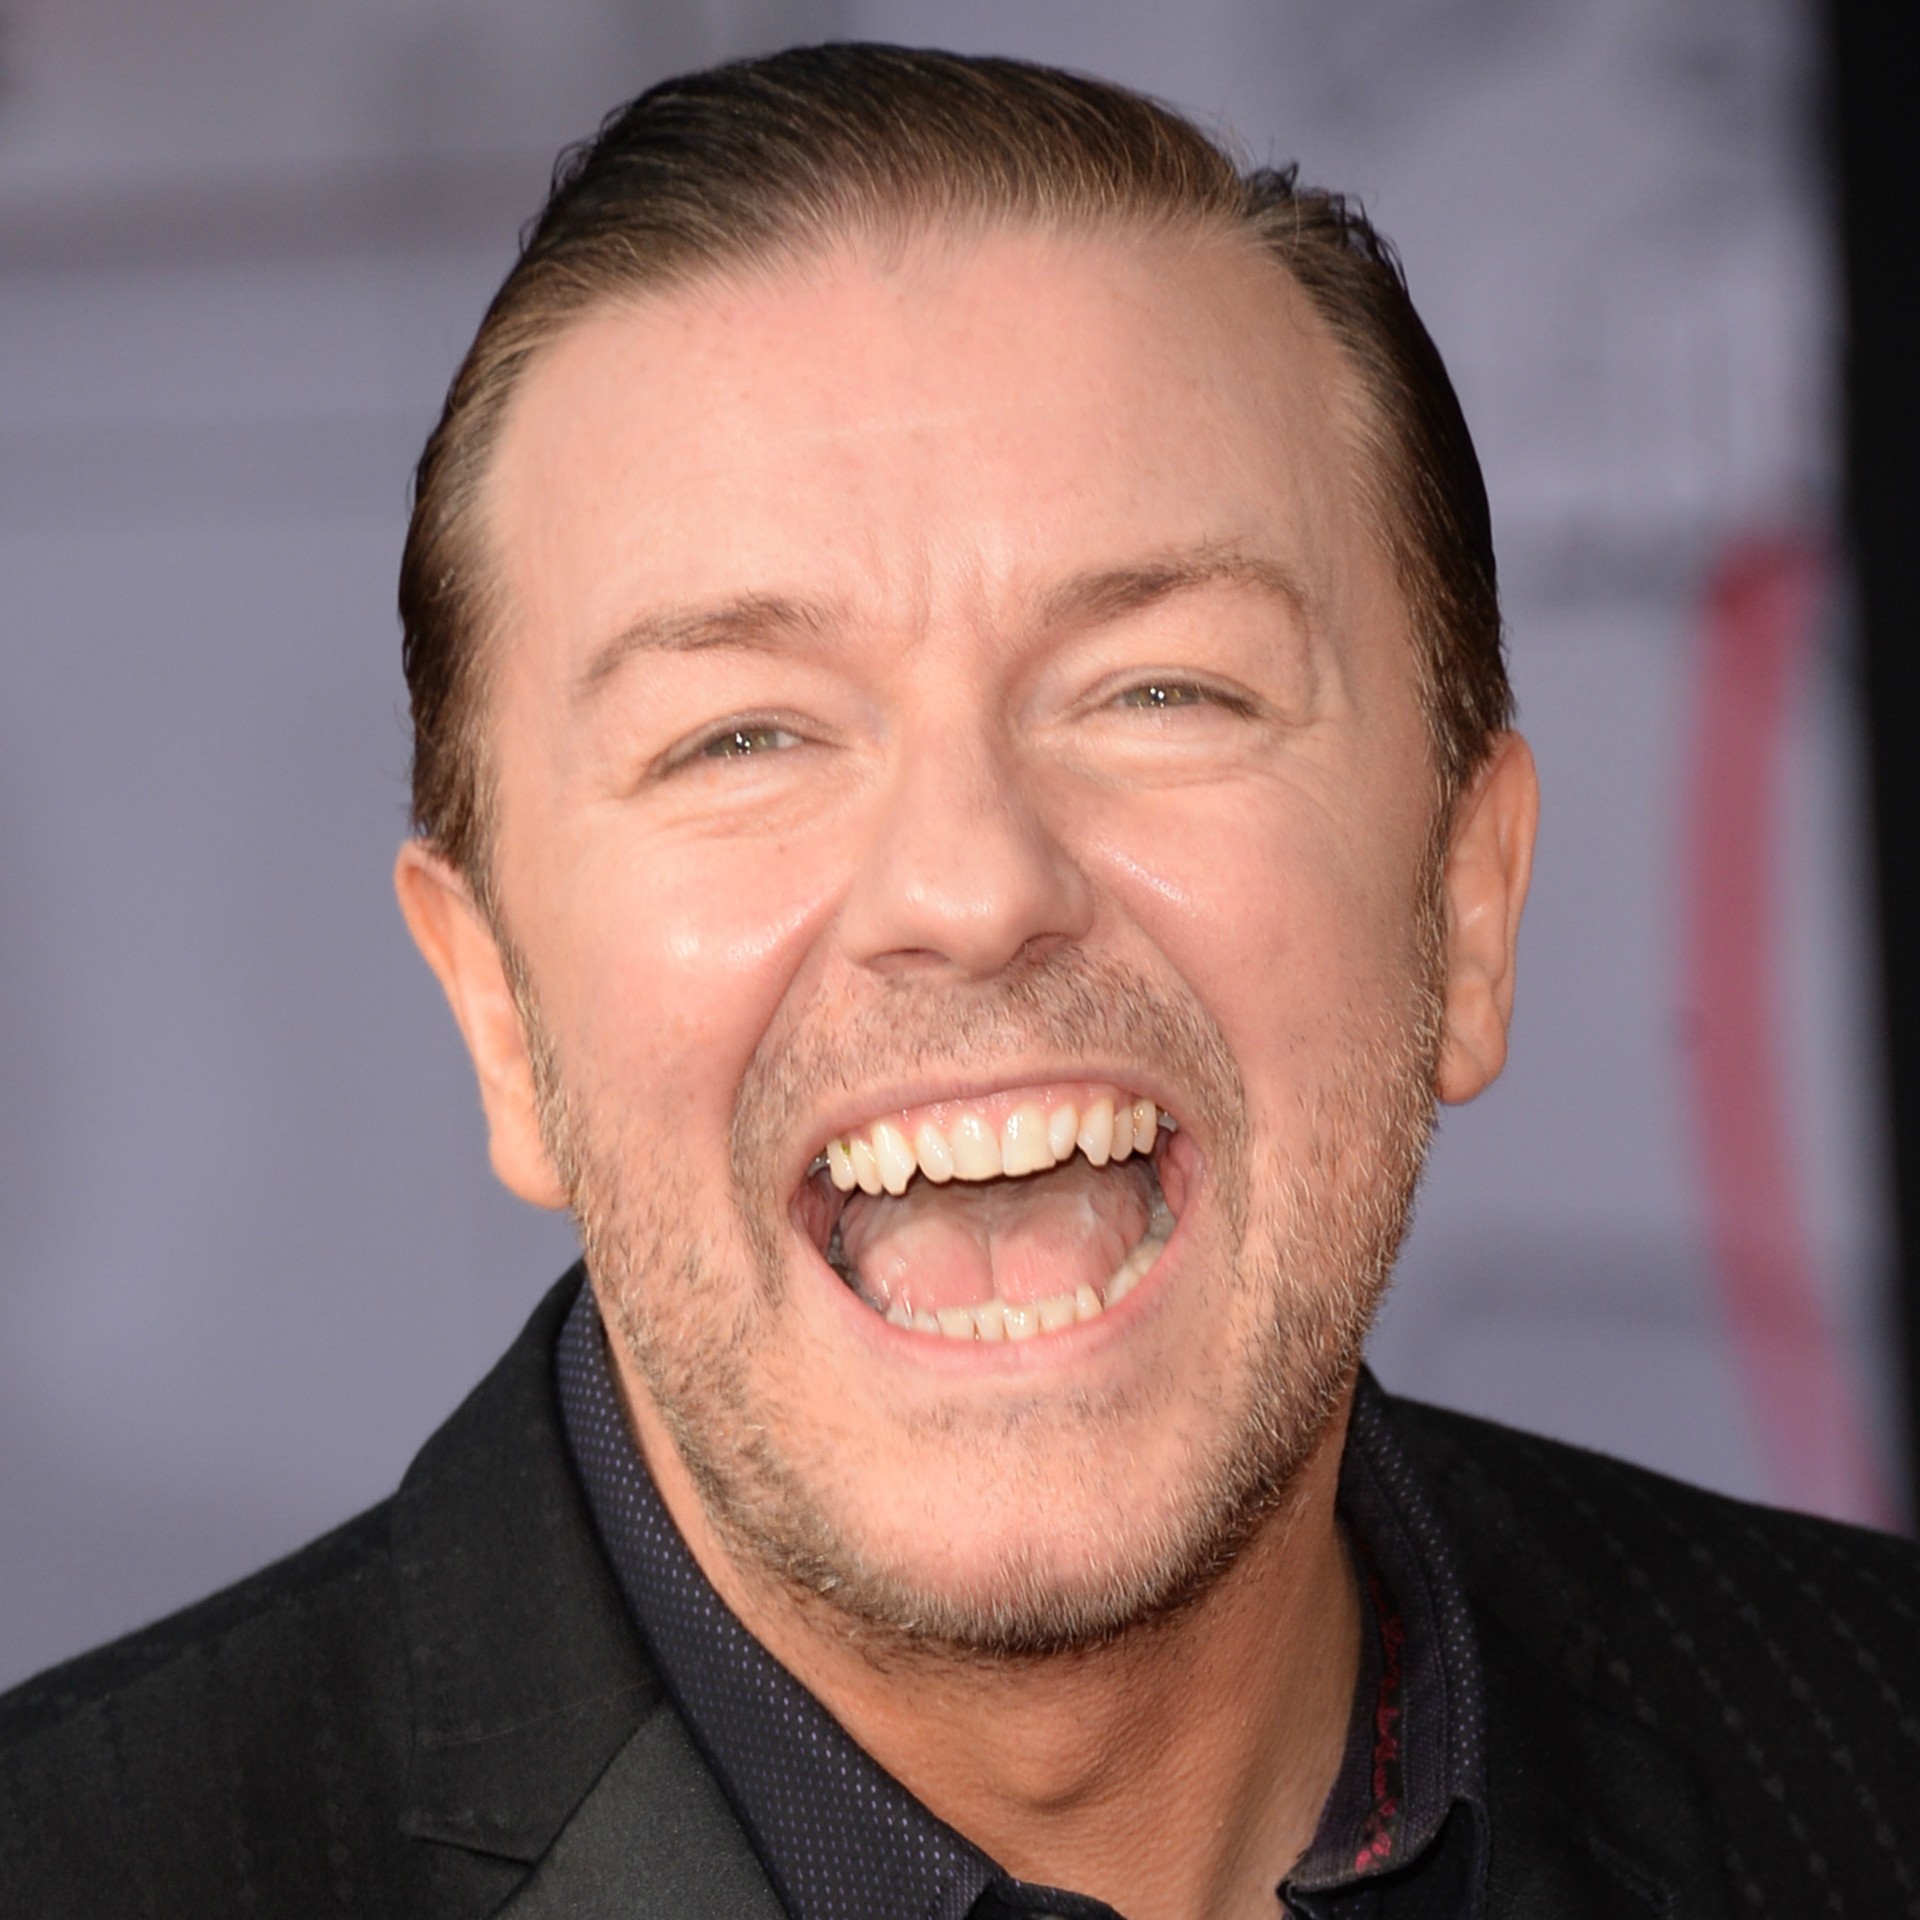 Já o comediante multimídia Ricky Gervais tweetou: "Sério, quem são essas pessoas capazes de apanhar de Justin Bieber? E por que elas admitiriam isso?". (Foto: Getty Images)